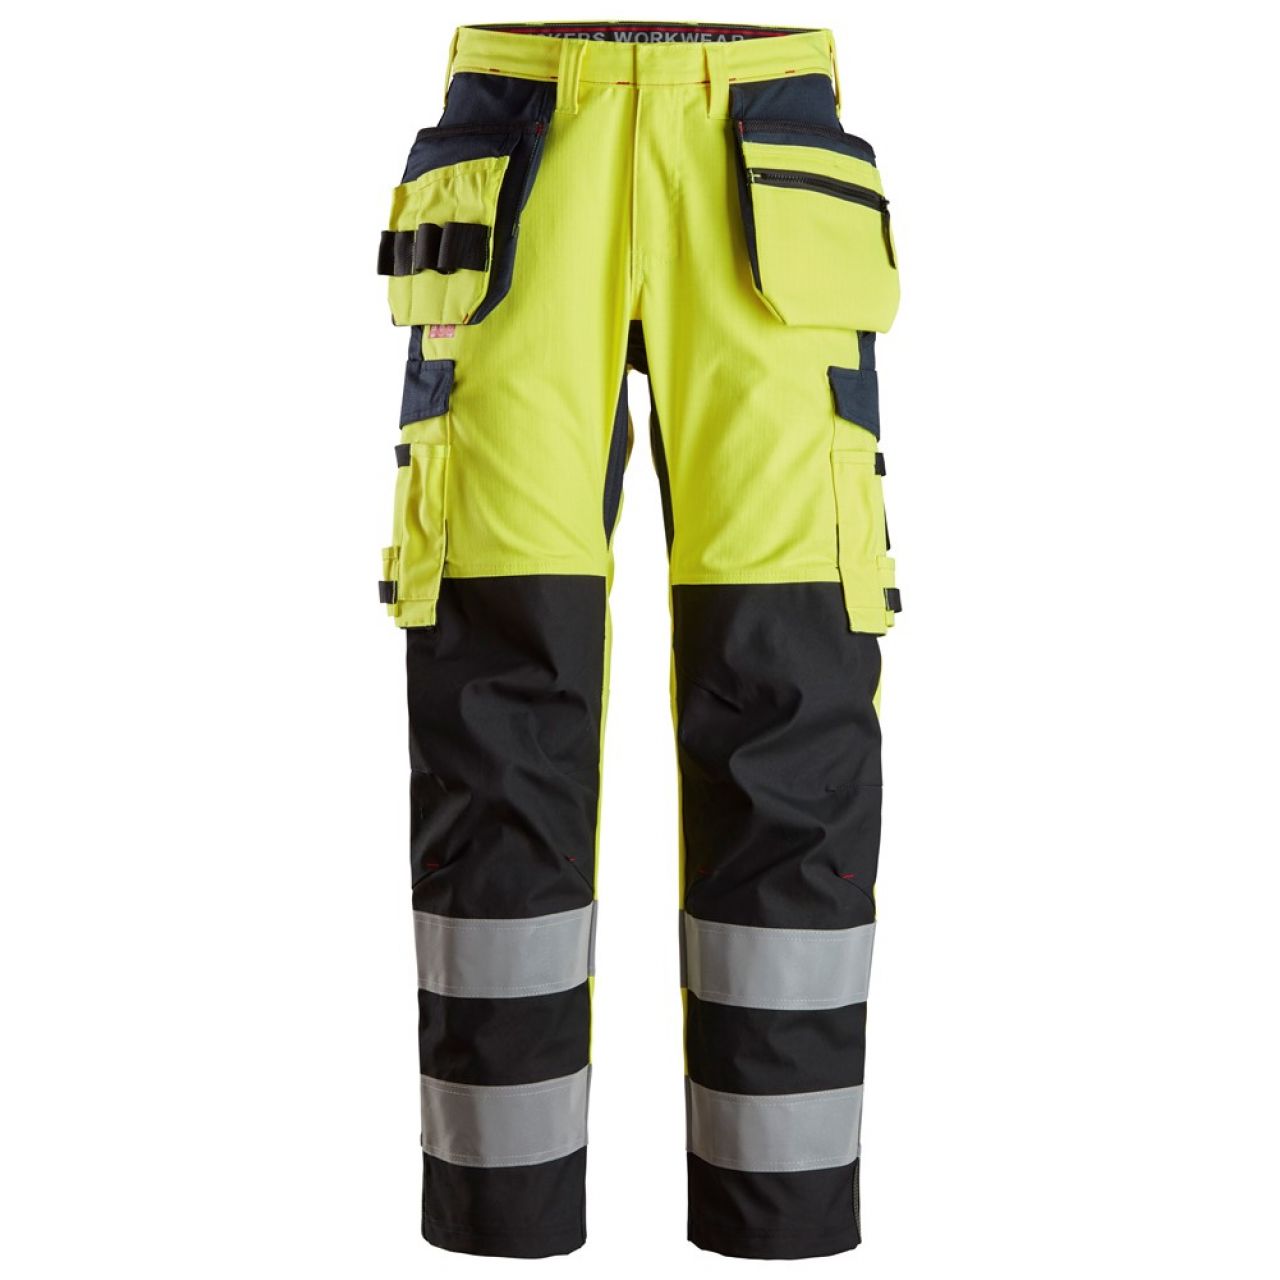 6264 Pantalones largos de trabajo de alta visibilidad clase 2 con bolsillos flotantes y espinilla reforzada ProtecWork amarillo-azul marino talla 92